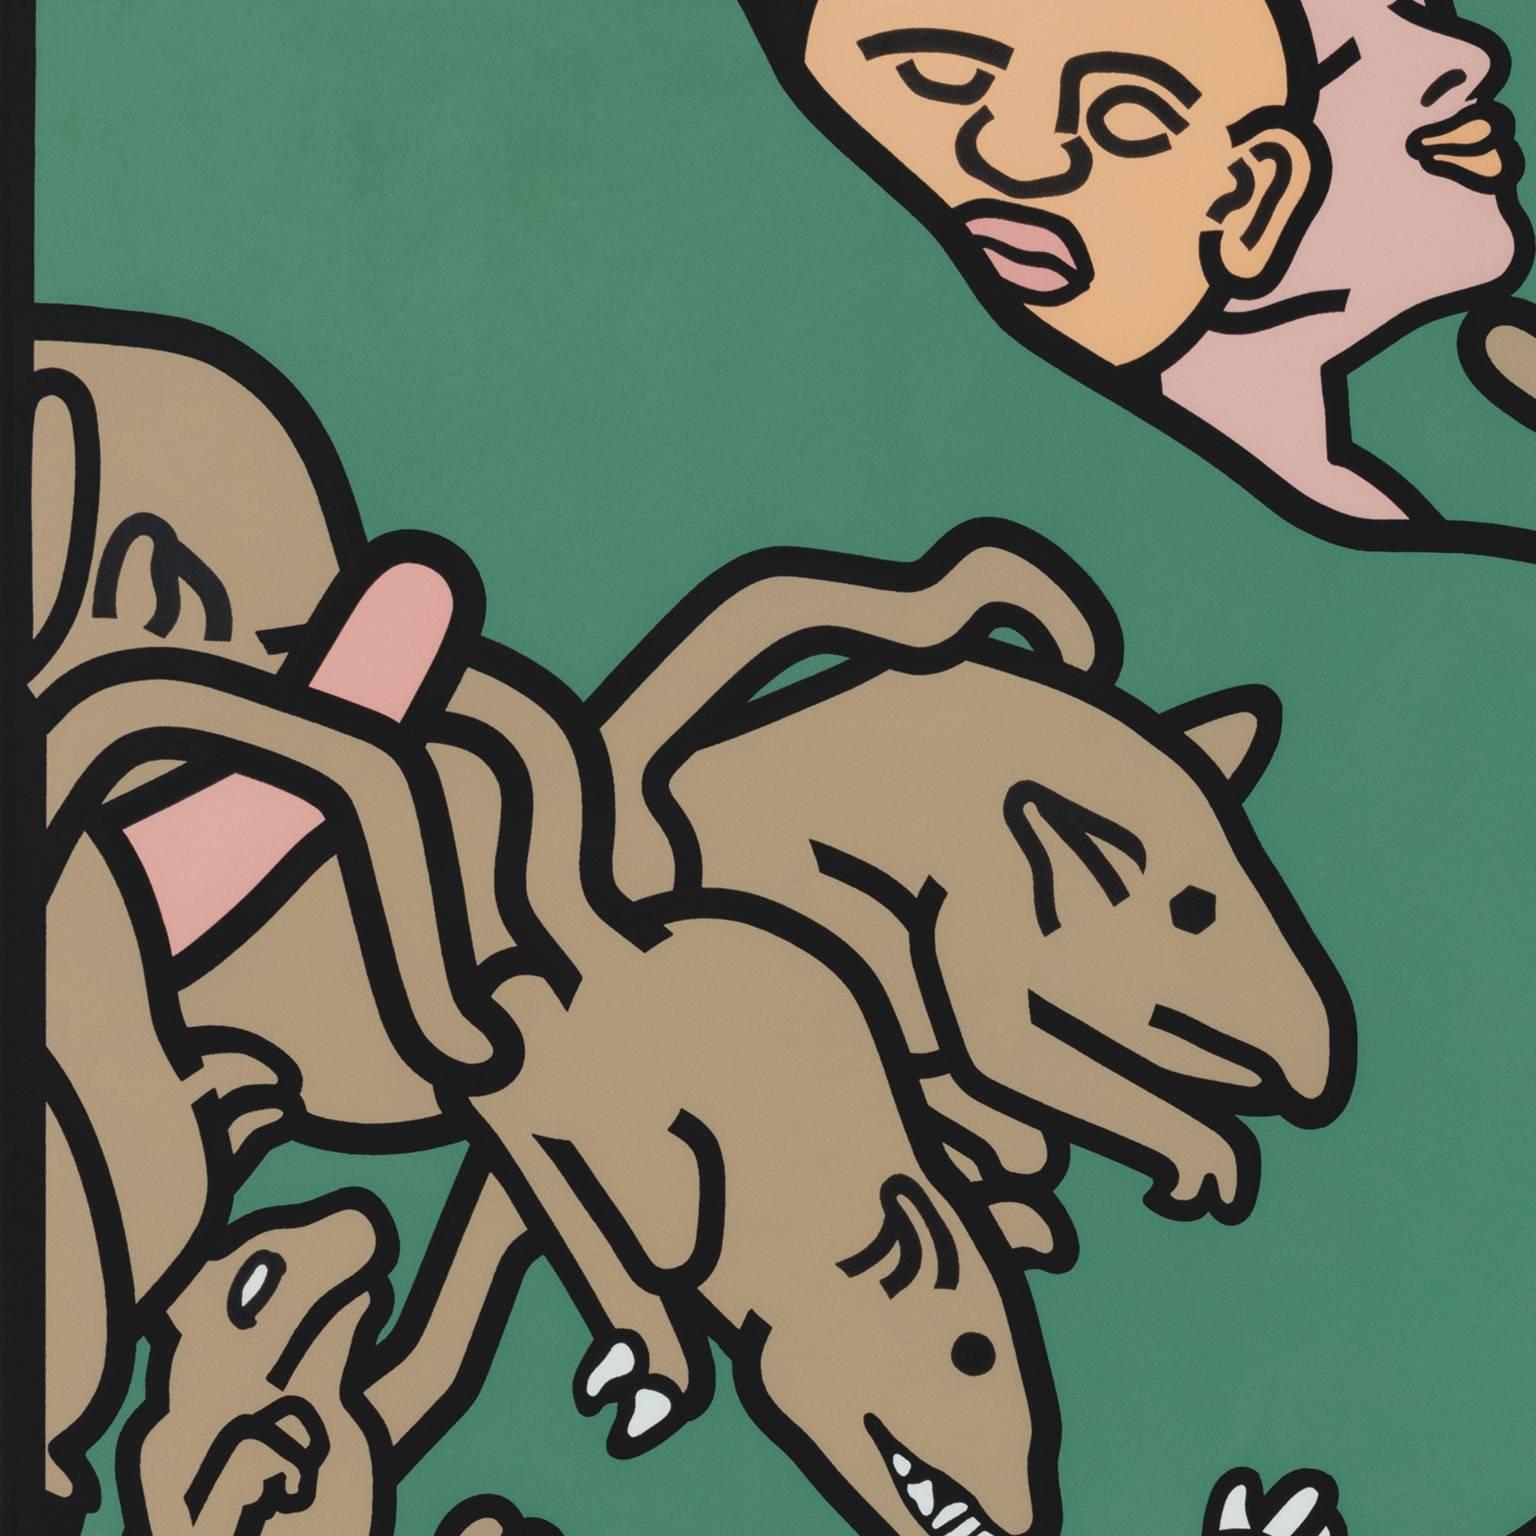 Die Ratten – Print von Bernard Aptekar